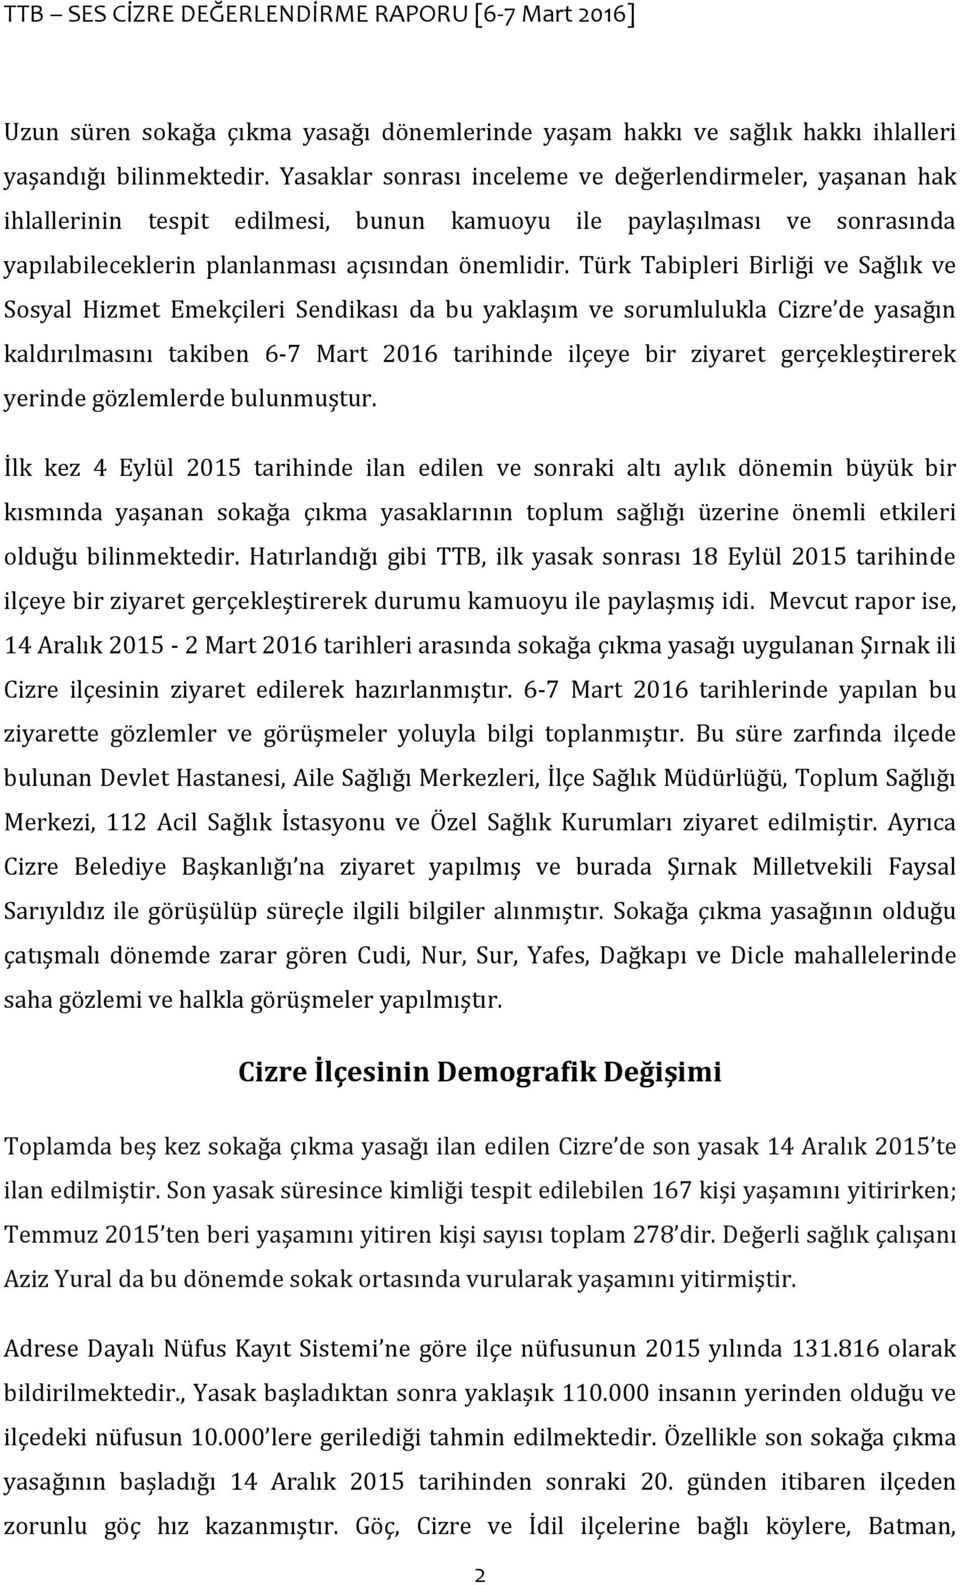 Türk Tabipleri Birliği ve Sağlık ve Sosyal Hizmet Emekçileri Sendikası da bu yaklaşım ve sorumlulukla Cizre de yasağın kaldırılmasını takiben 6-7 Mart 2016 tarihinde ilçeye bir ziyaret